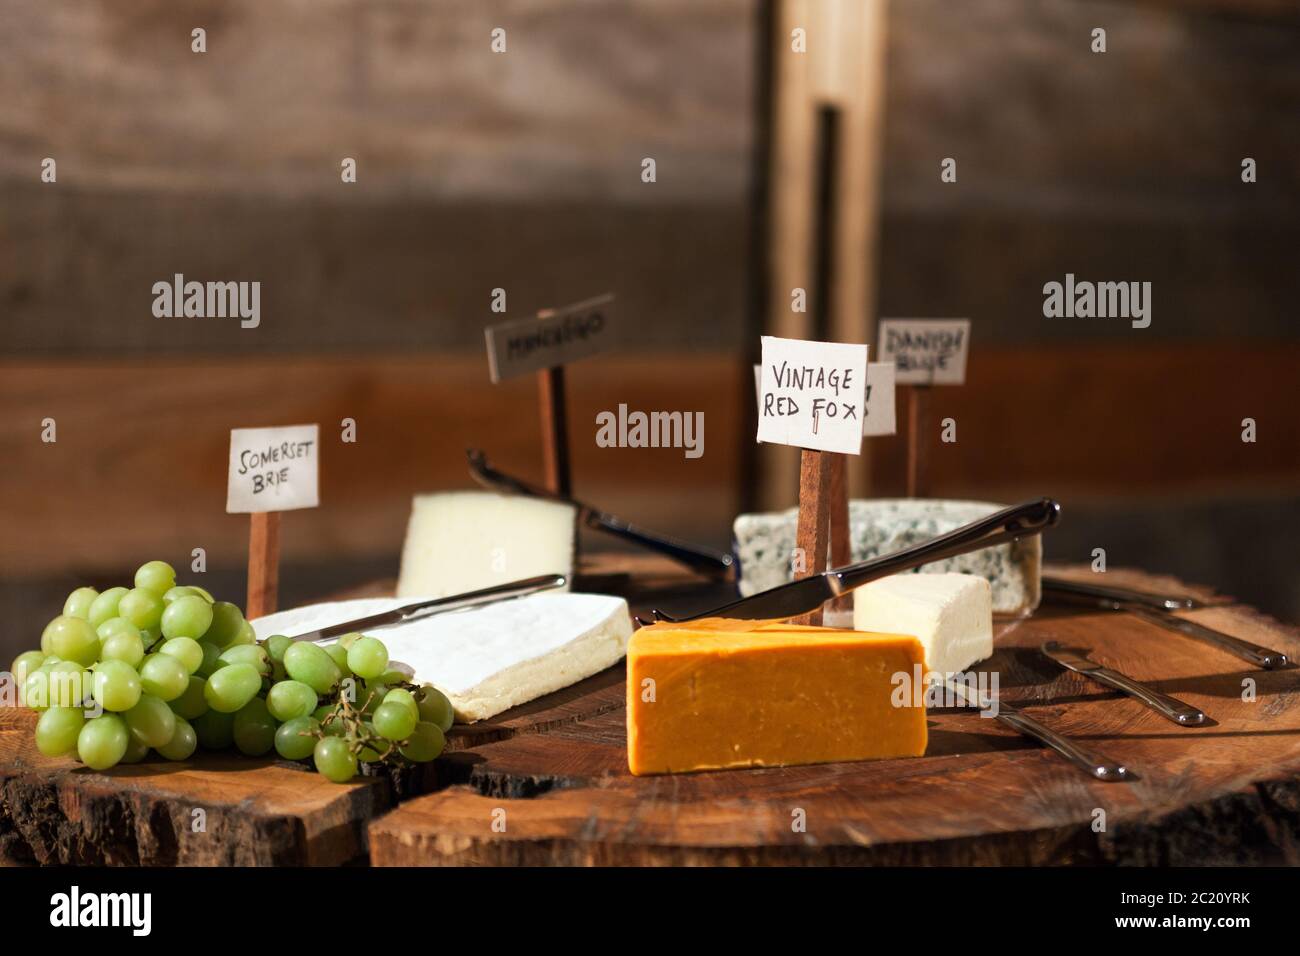 Plateau de fromages rustique avec une sélection de fromages étiquetés et de viandes séchées au raisin. Banque D'Images